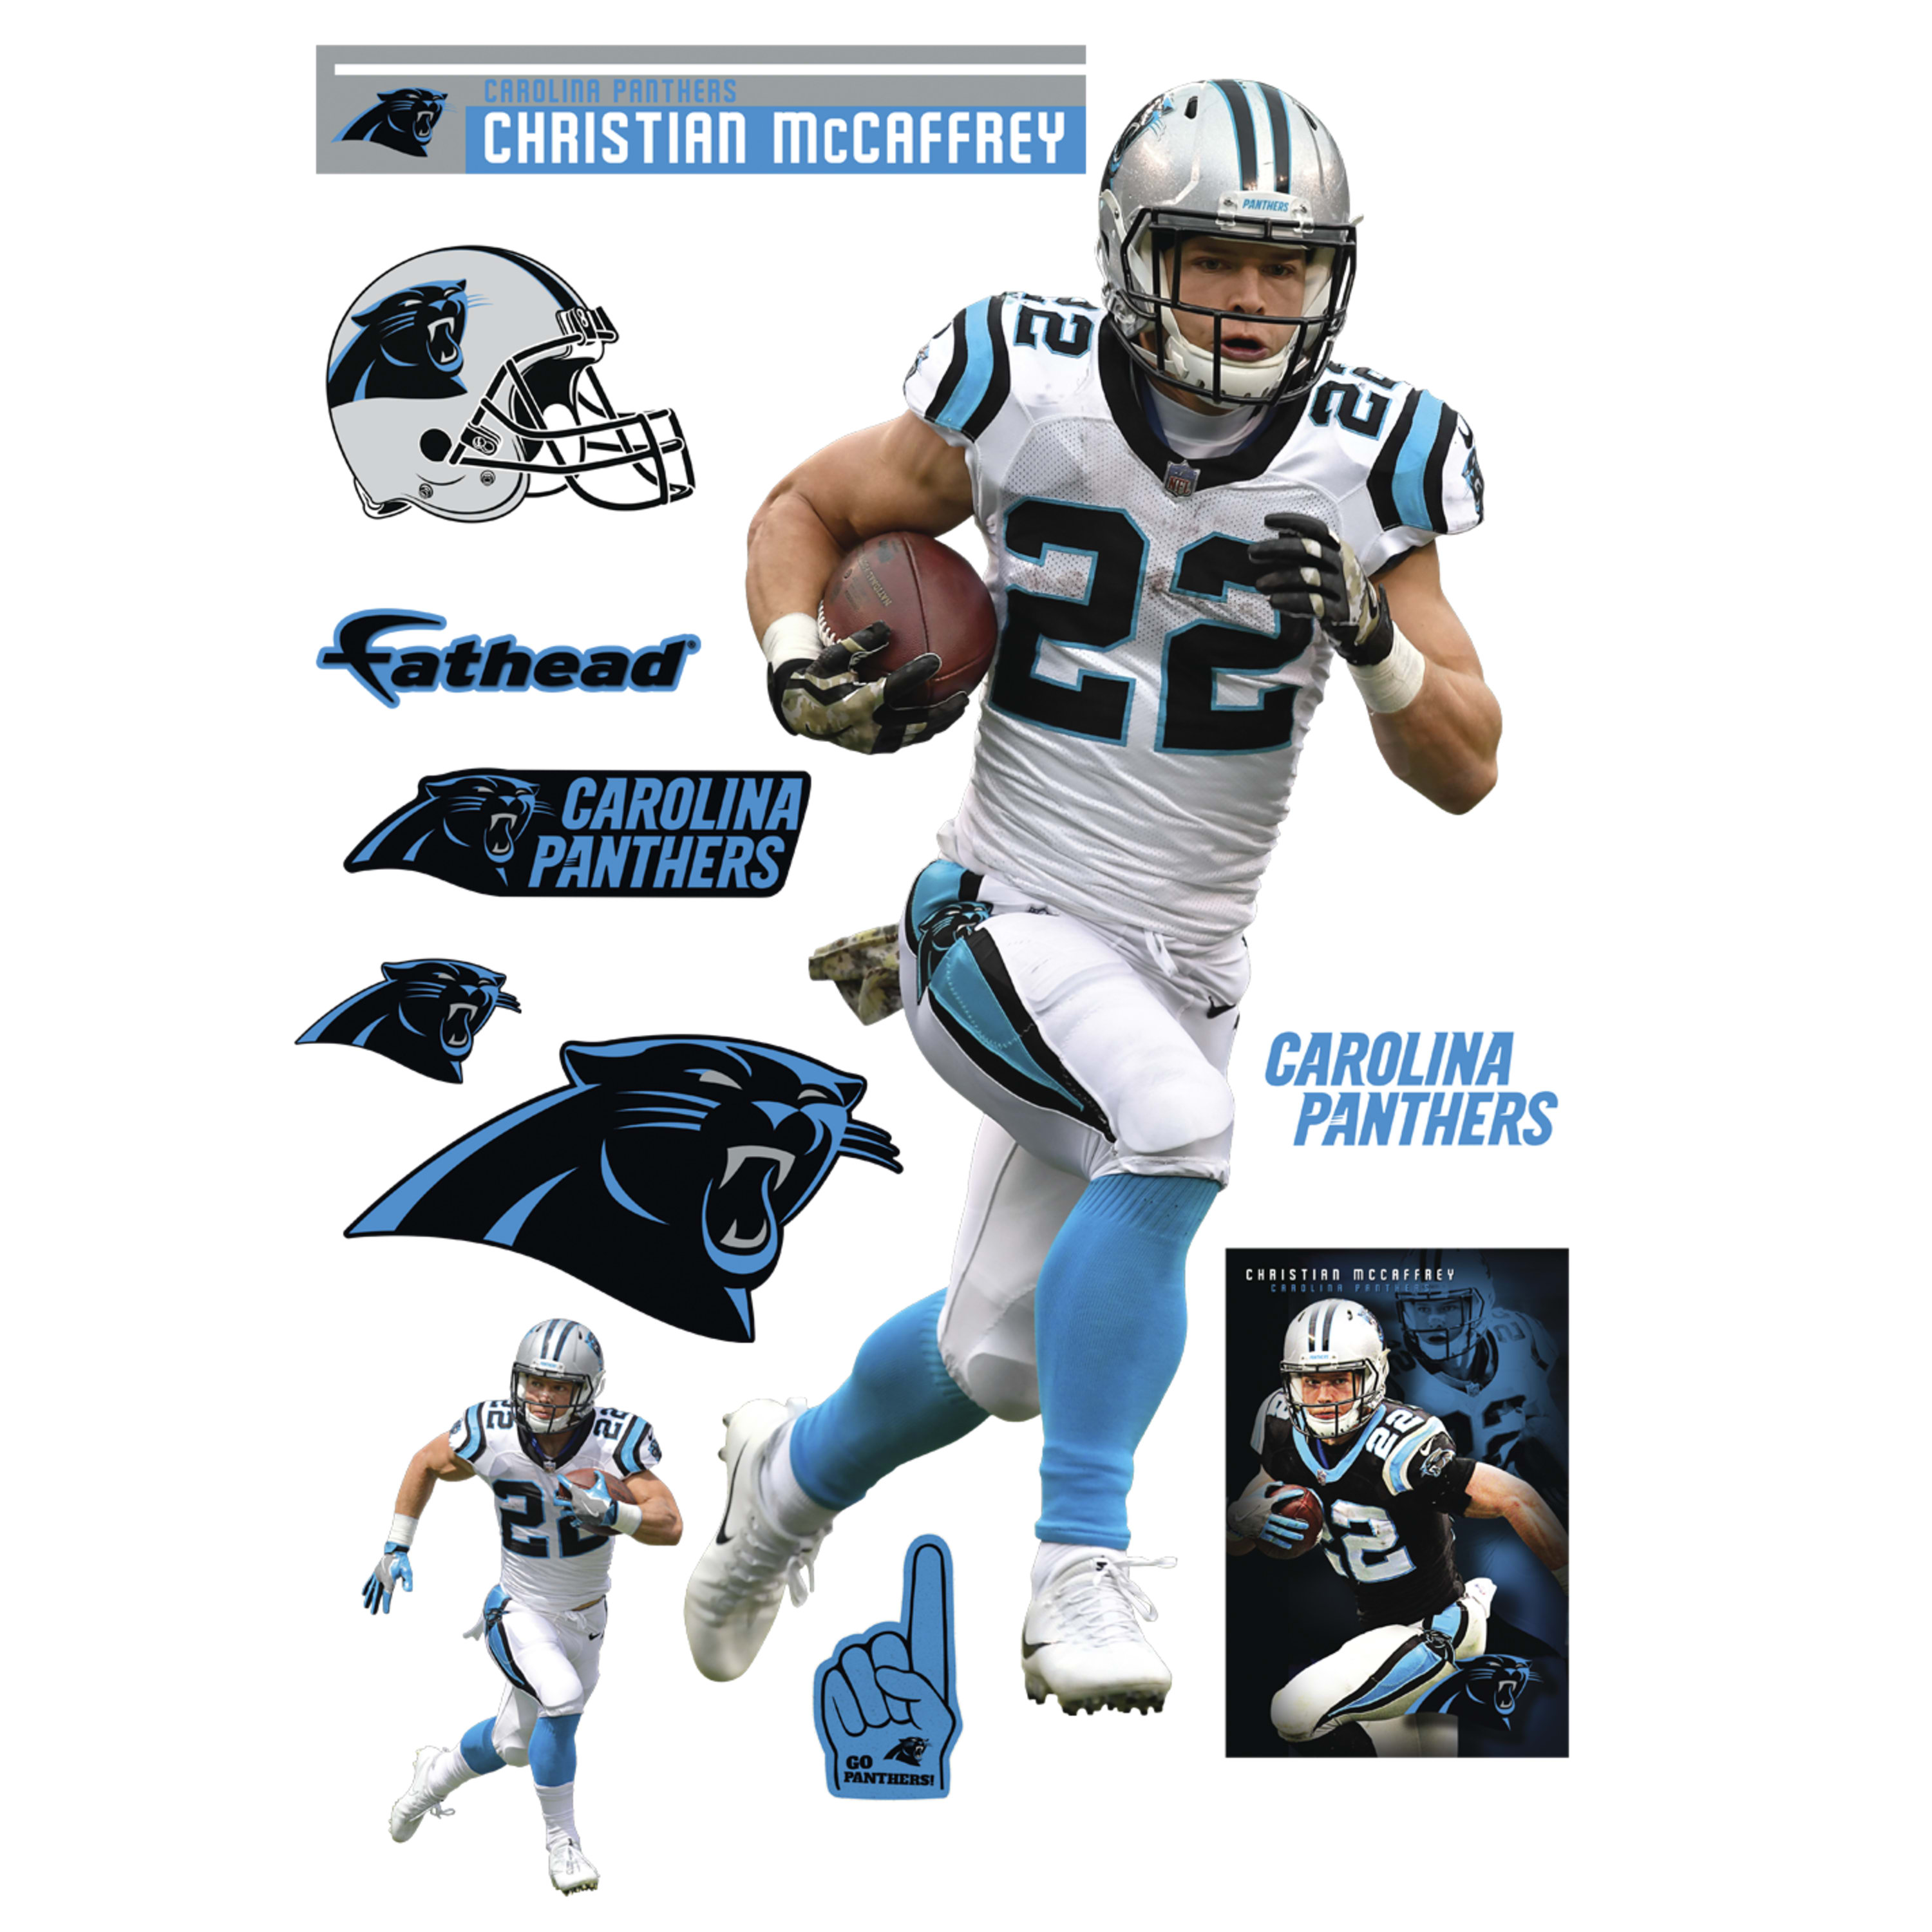 Christian Mccaffrey - Carolina Panthers , HD Wallpaper & Backgrounds